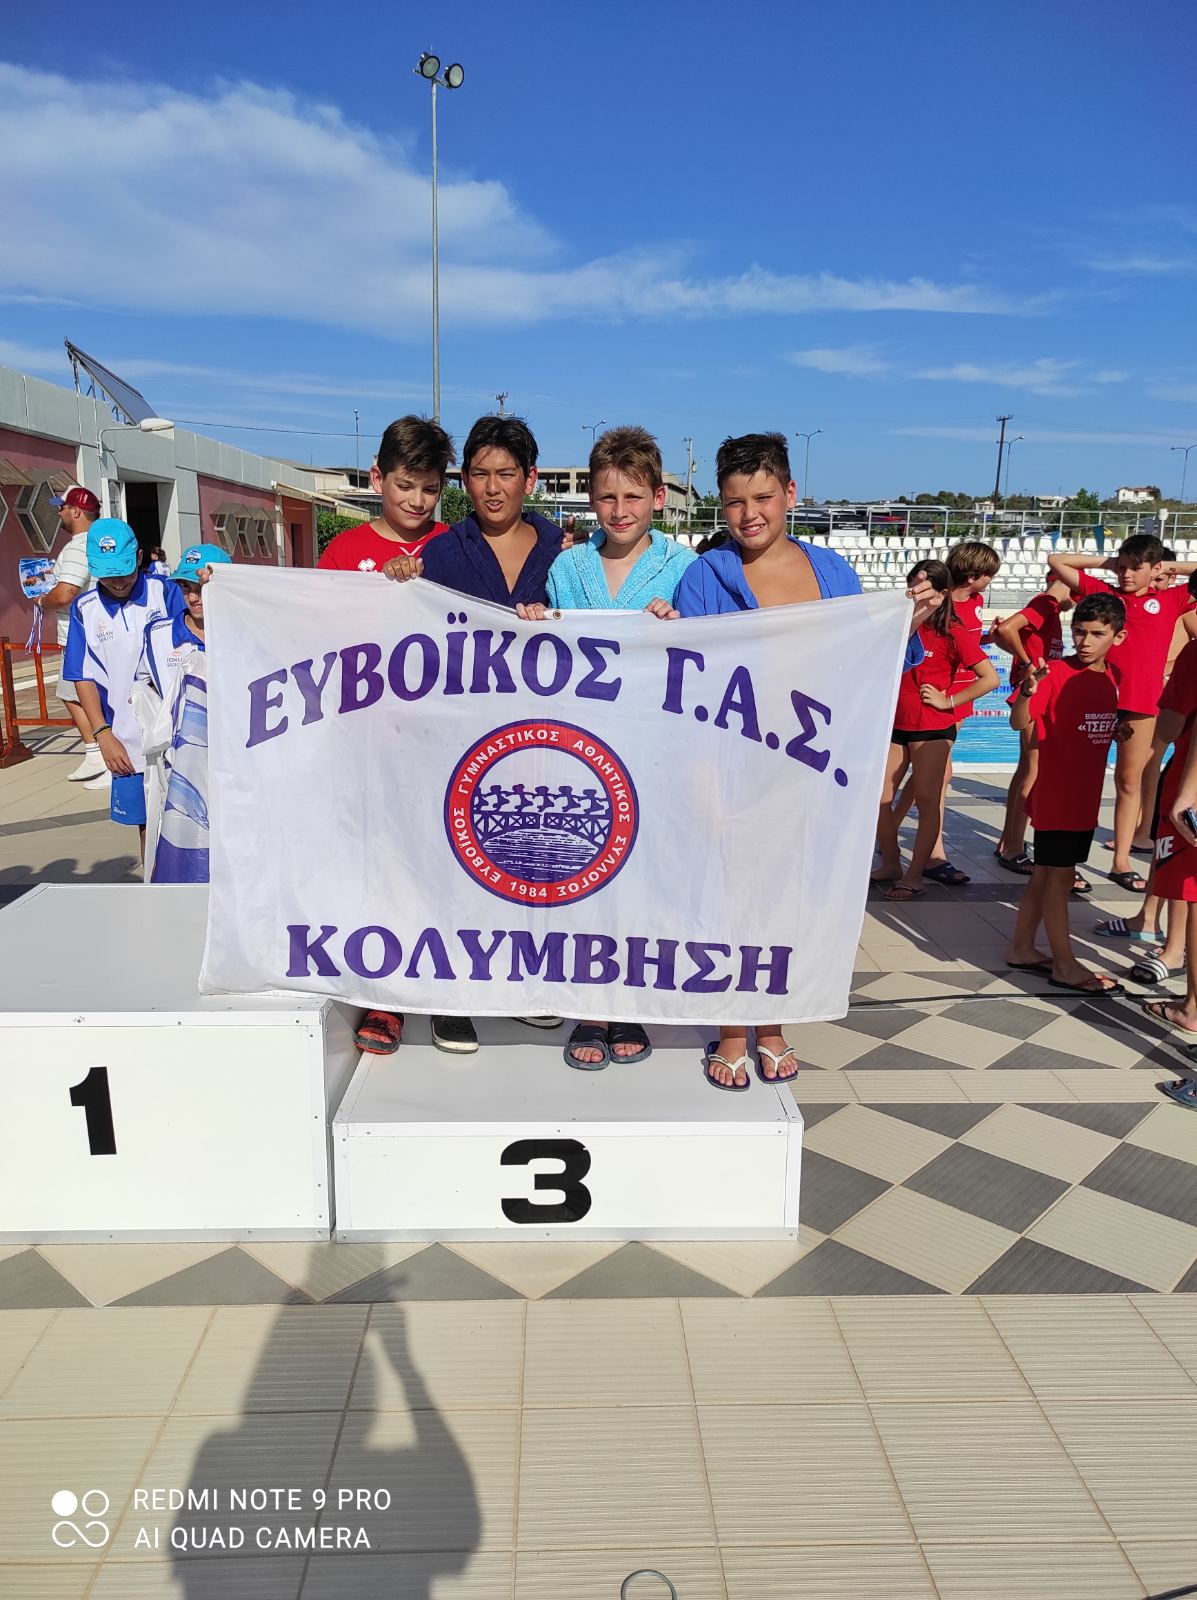 Διασυλλογικοί αγώνες «1Ο Κύπελλο Ιωάννης Λαζαρίδης»: Μετάλλια κι εμπειρίες για την προαγωνιστική ομάδα 9-12 ετών του Ευβοϊκού Γ.Α.Σ